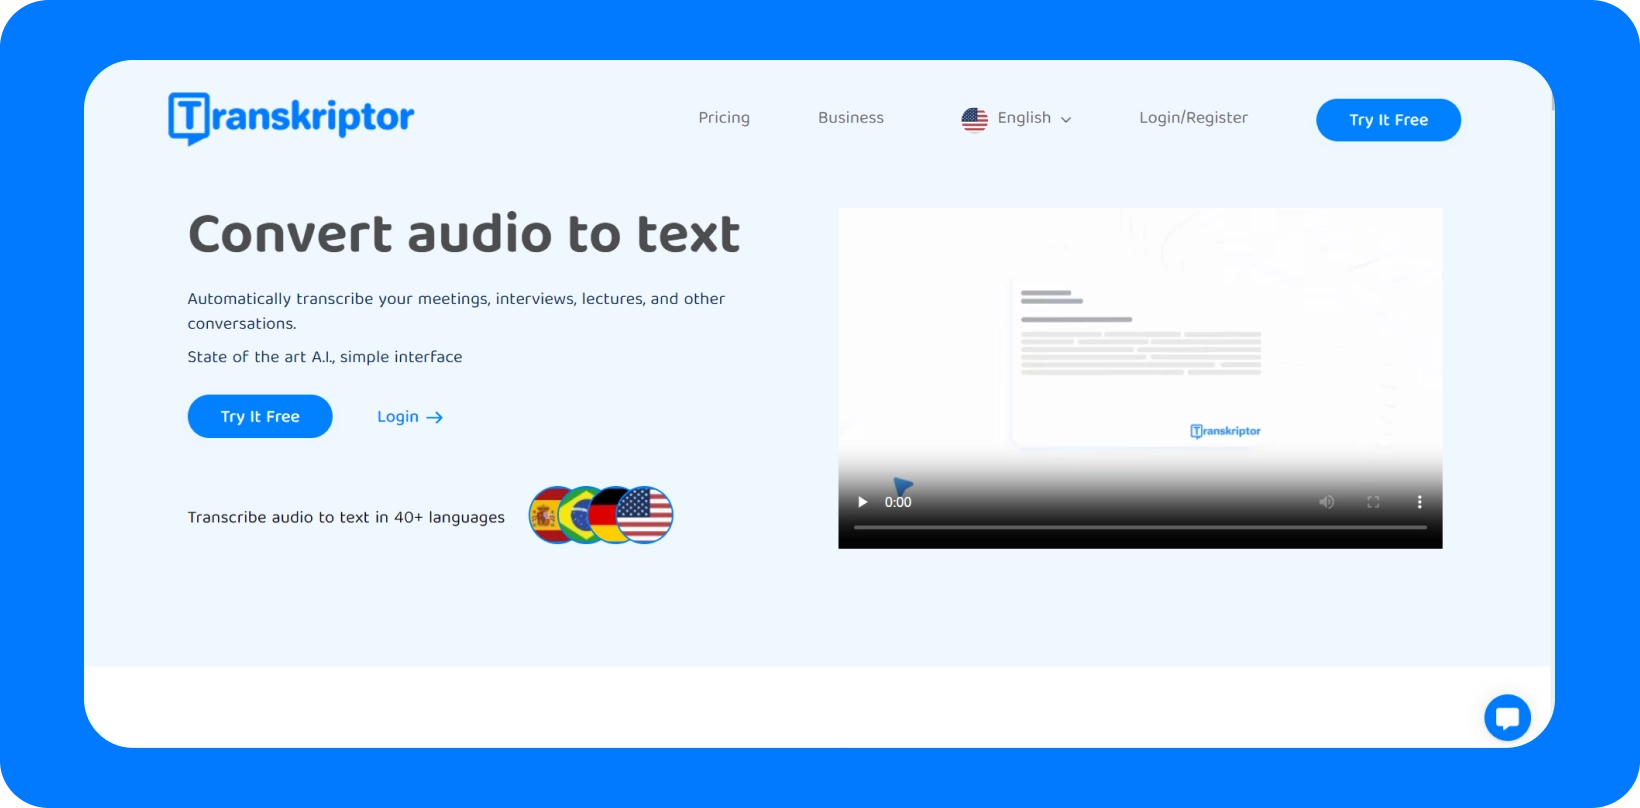 Transkriptor kezelőfelület, amely bemutatja a "Hang konvertálása szöveggé" szolgáltatást, többnyelvű támogatással.